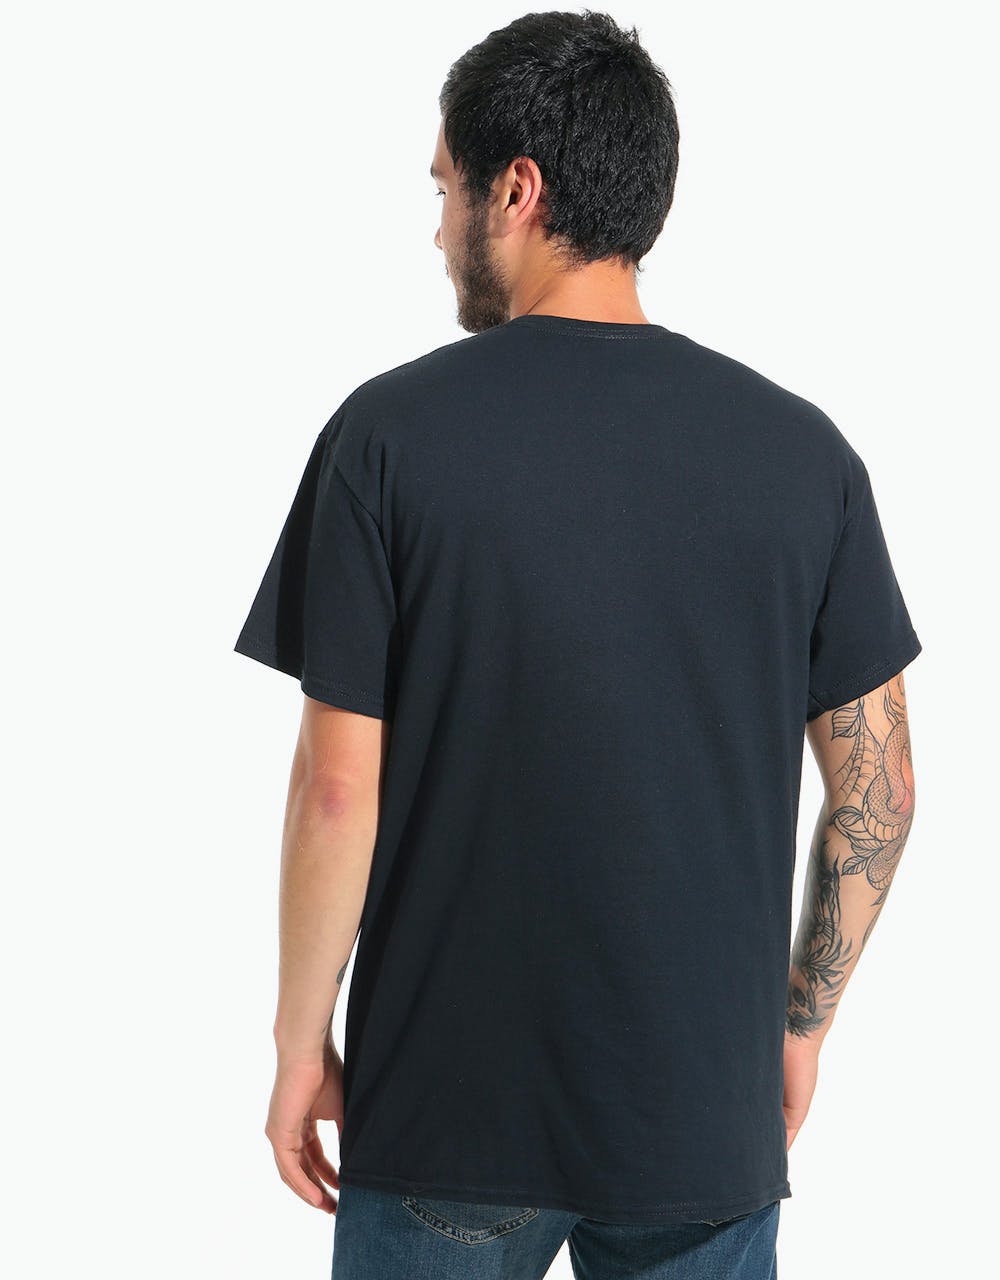 Thrasher Gonz T-Shirt - Black